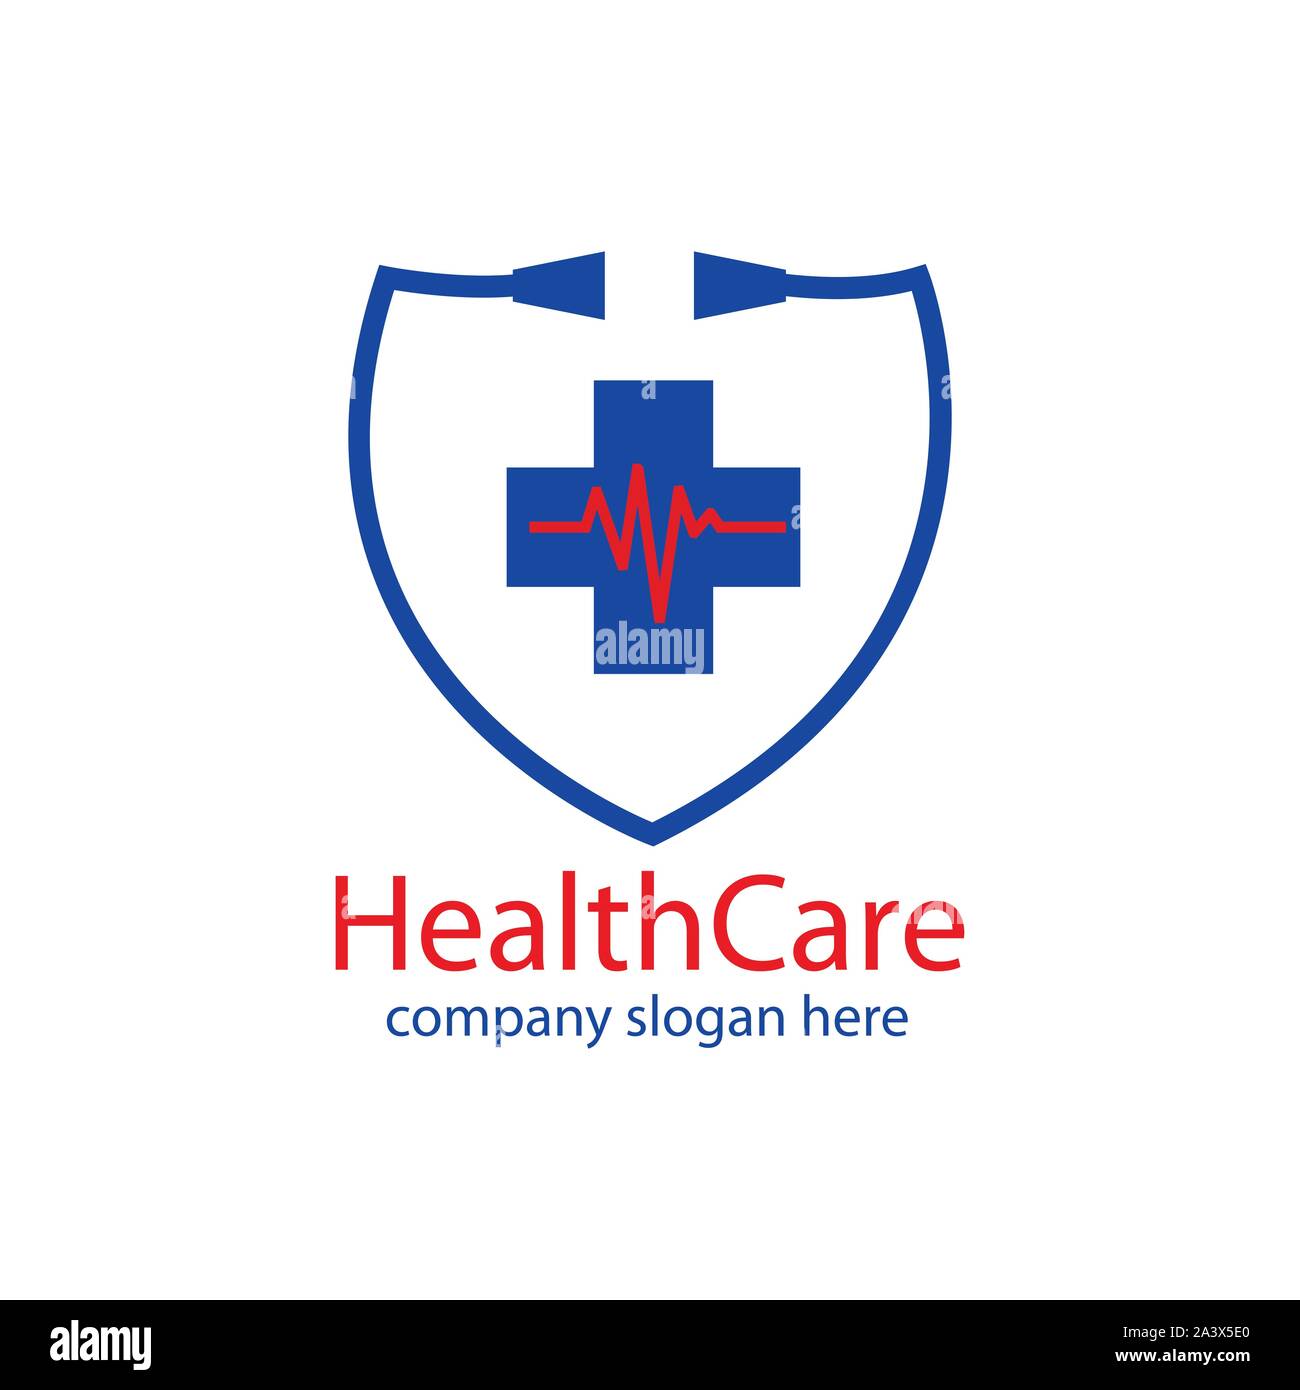 Healthcare logo or icon. Hospital logo - Vector Stock Vector Image ...